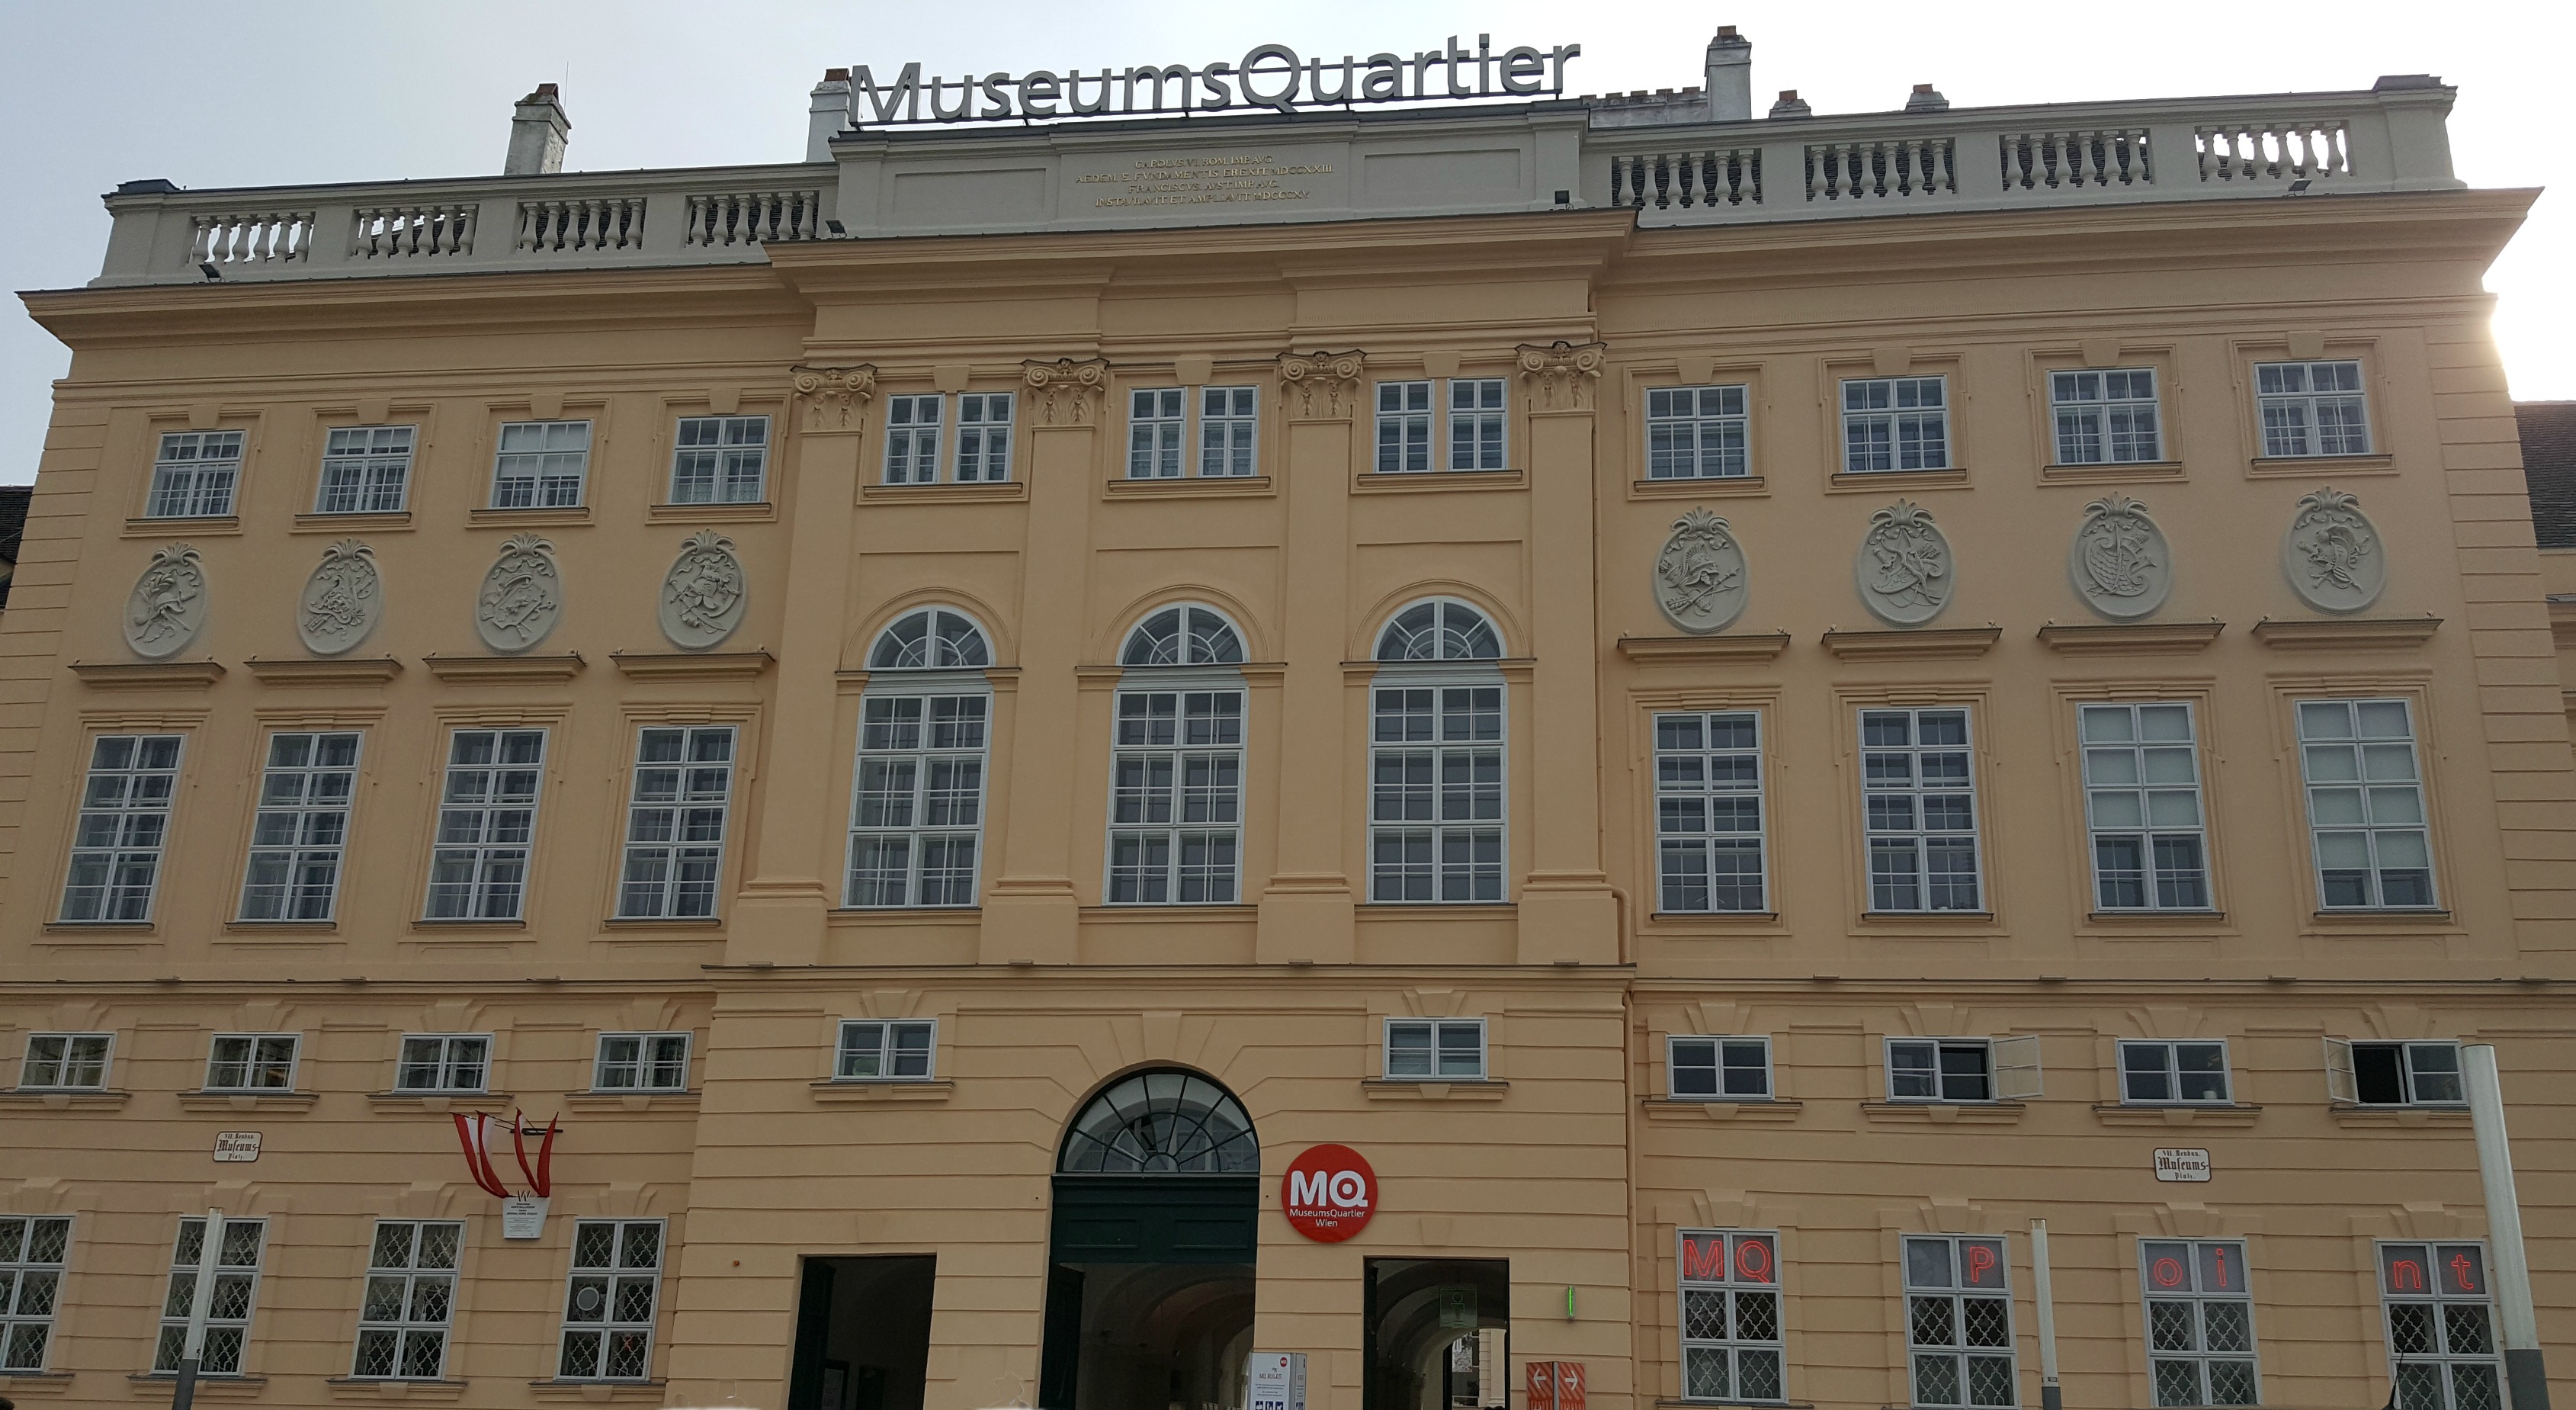 Museumsquartier wien